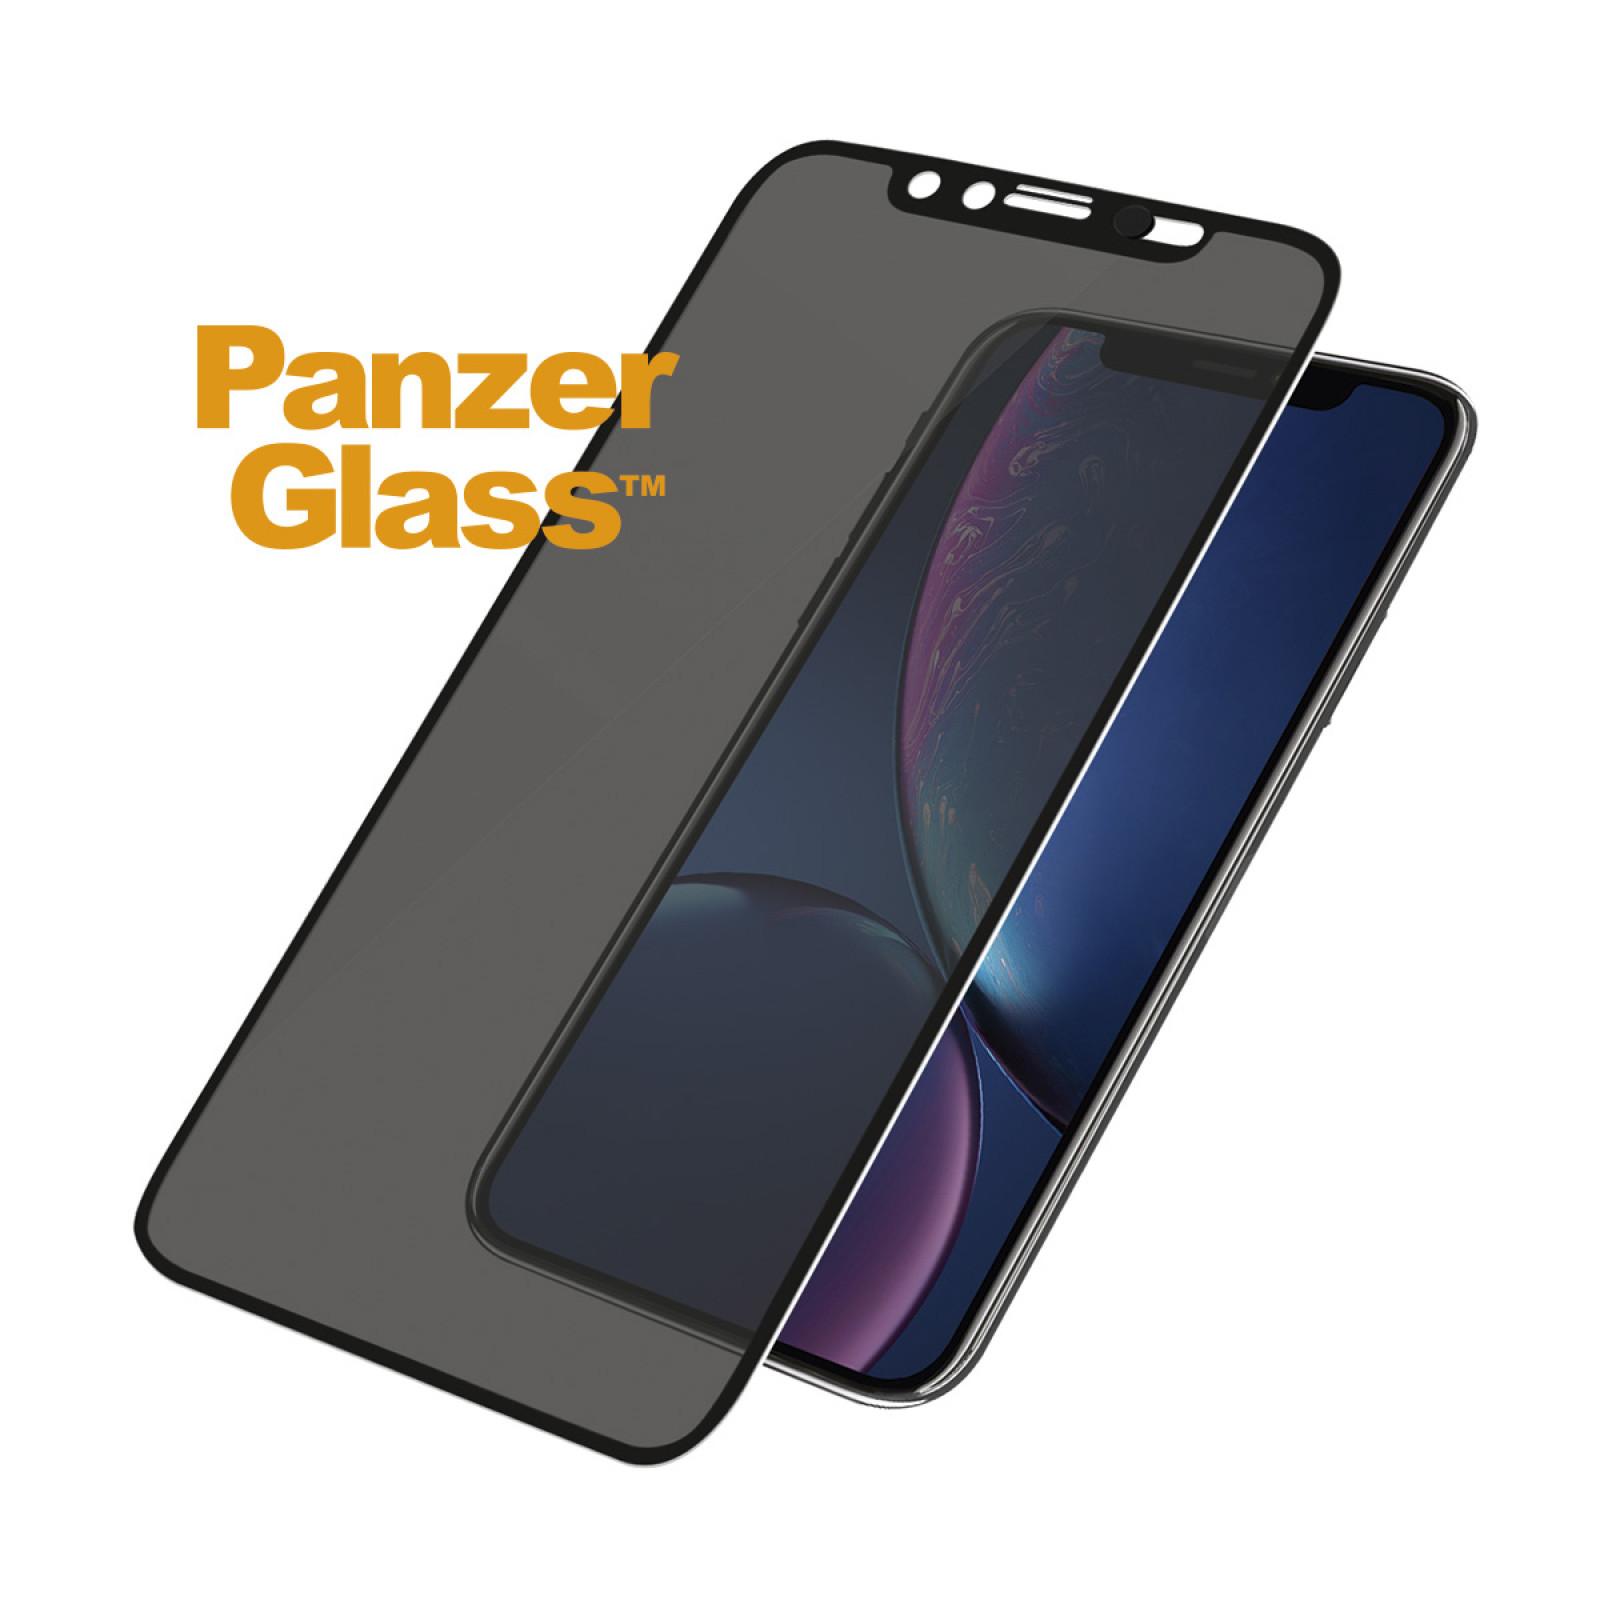 Стъклен протектор Apple Iphone XR/11 PanzerGlass CaseFriendly CamSlider, Privacy - Черен